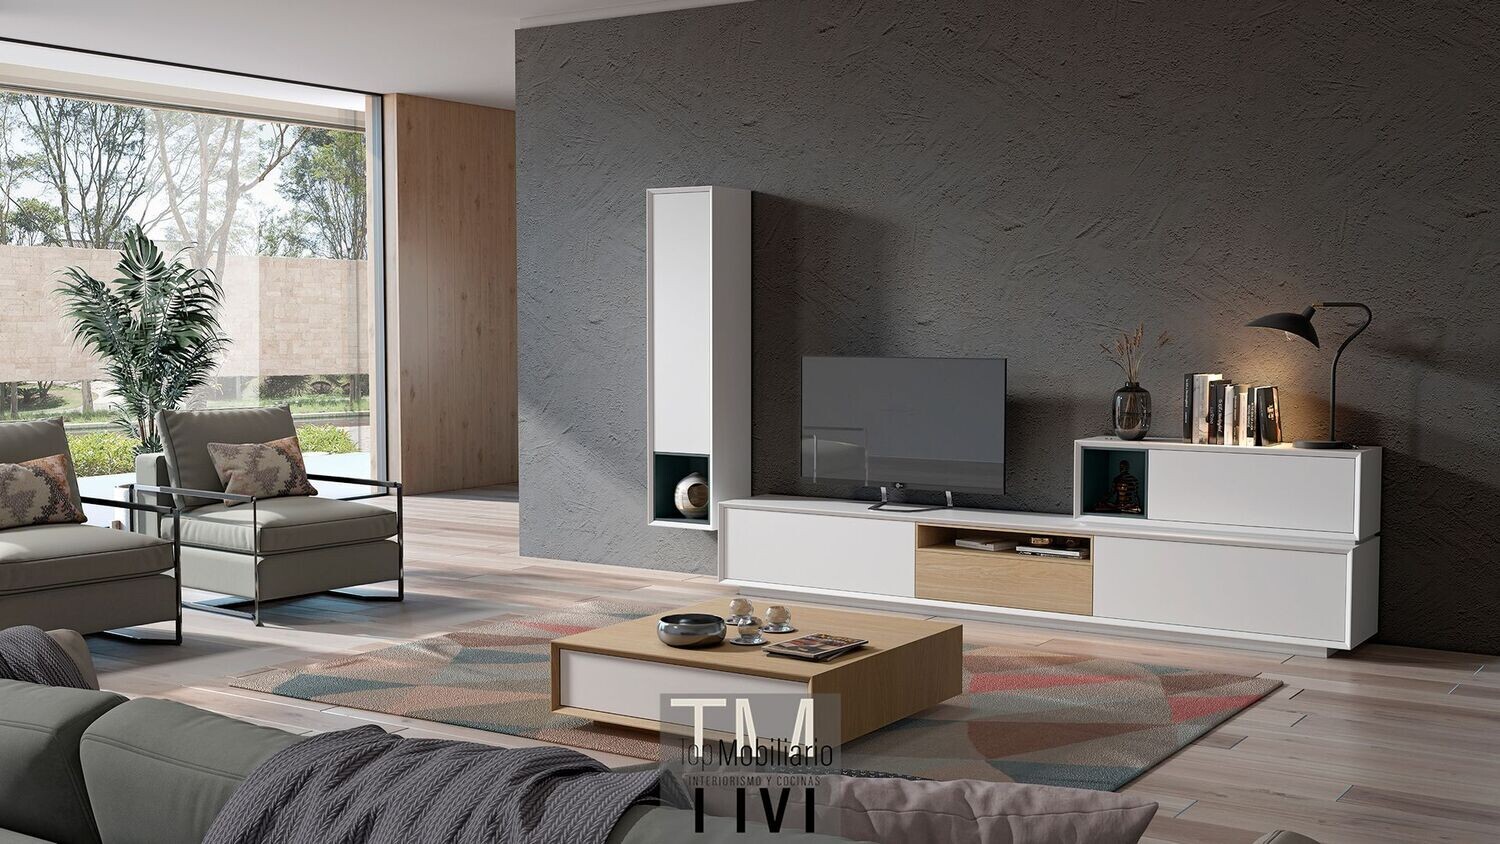 Composición mueble bajo de TV con mueble horizontal y vertical